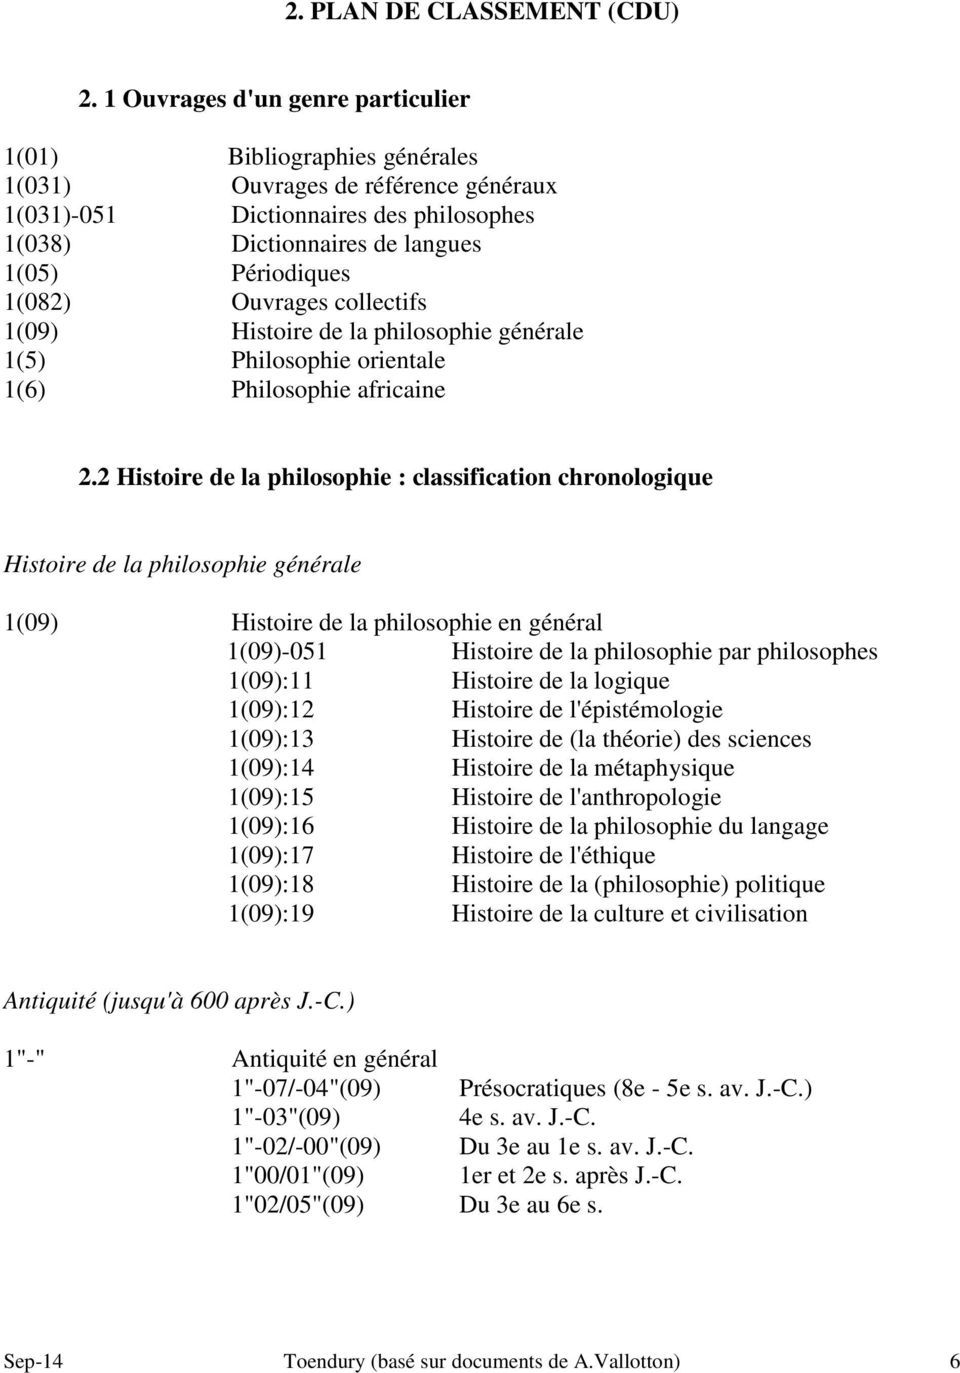 1(082) Ouvrages collectifs 1(09) Histoire de la philosophie générale 1(5) Philosophie orientale 1(6) Philosophie africaine 2.